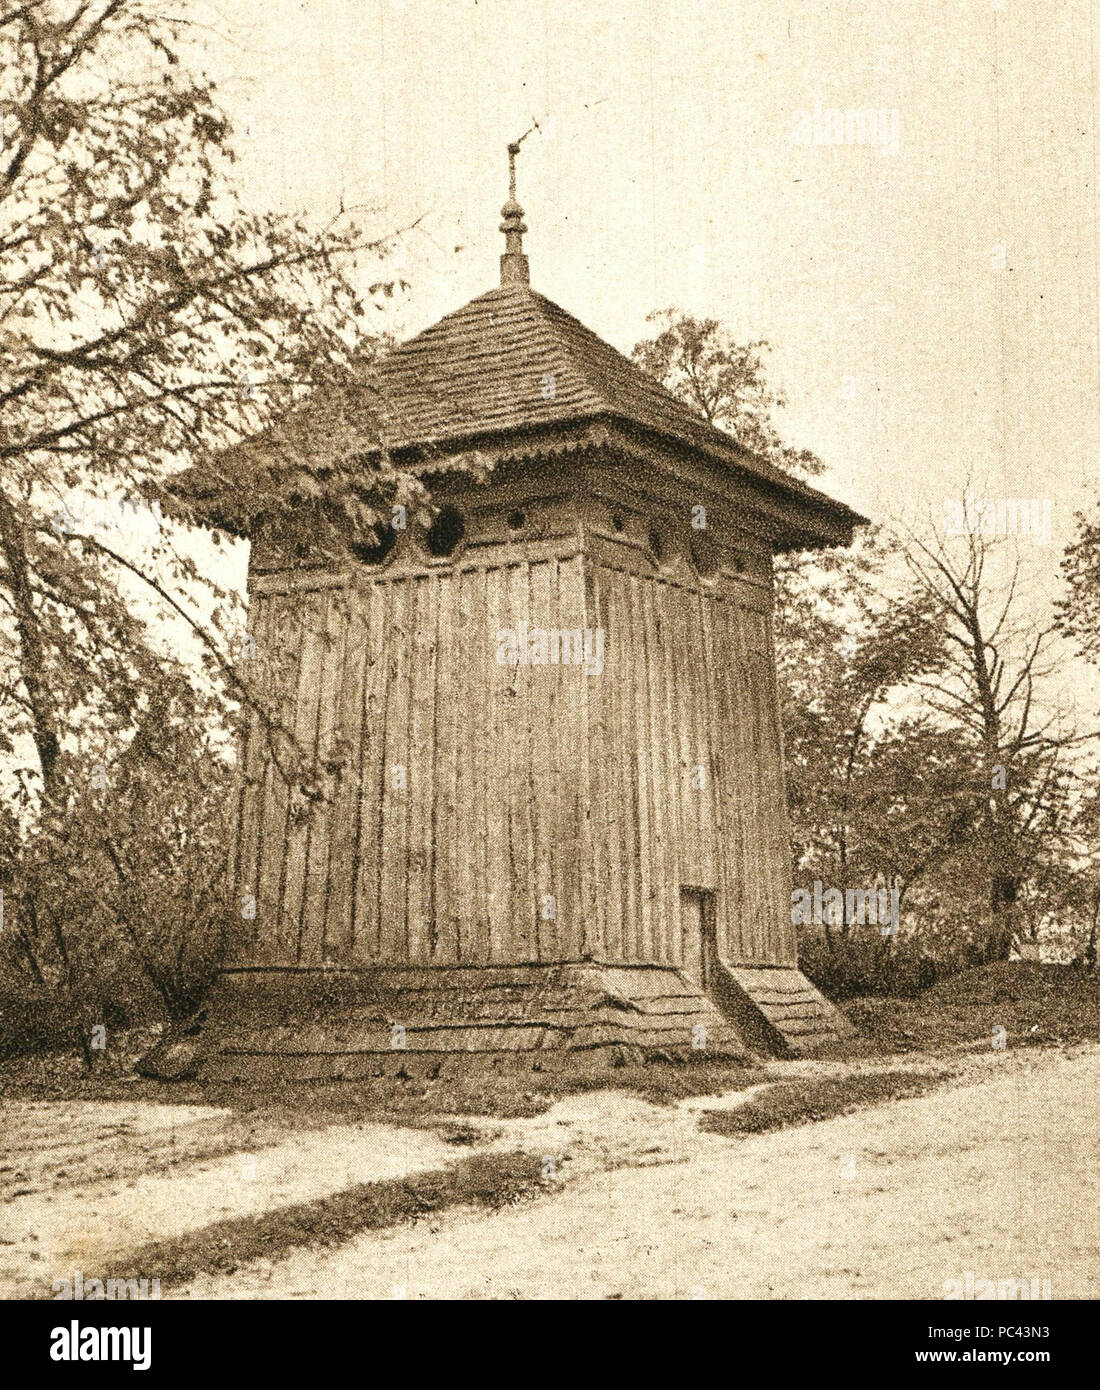 Dzwonnica w Solcu-Zdroju 566 Solec-Zdrój dzwonnica, pocztówka przed 1937 Stock Photo